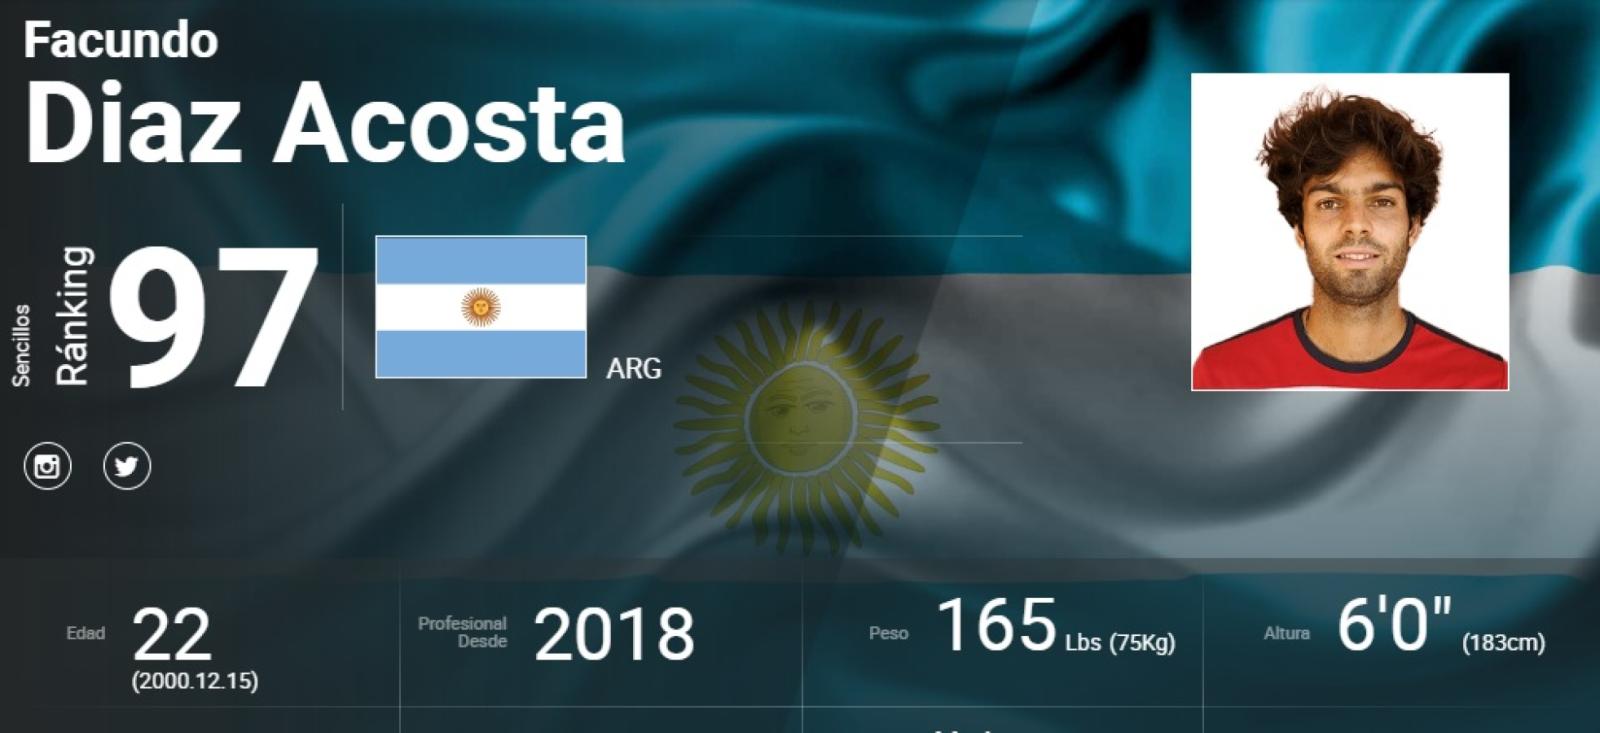 Imagen Facundo Díaz Acosta, el nuevo top 100 argentino.